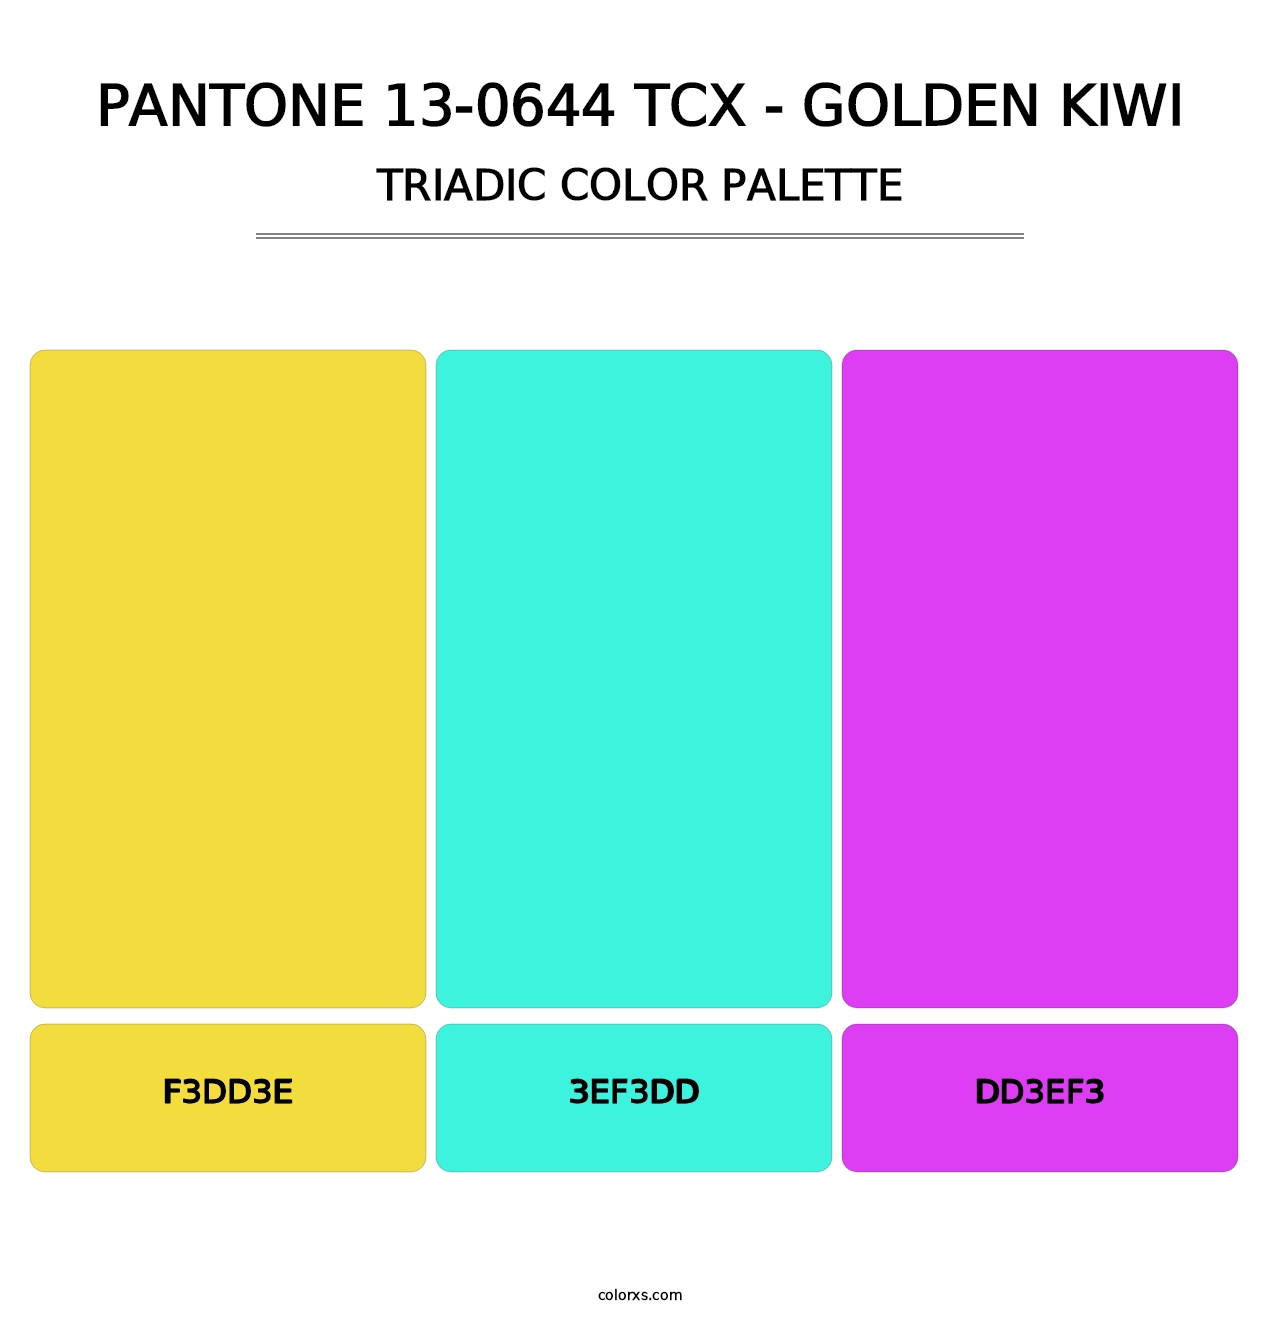 PANTONE 13-0644 TCX - Golden Kiwi - Triadic Color Palette